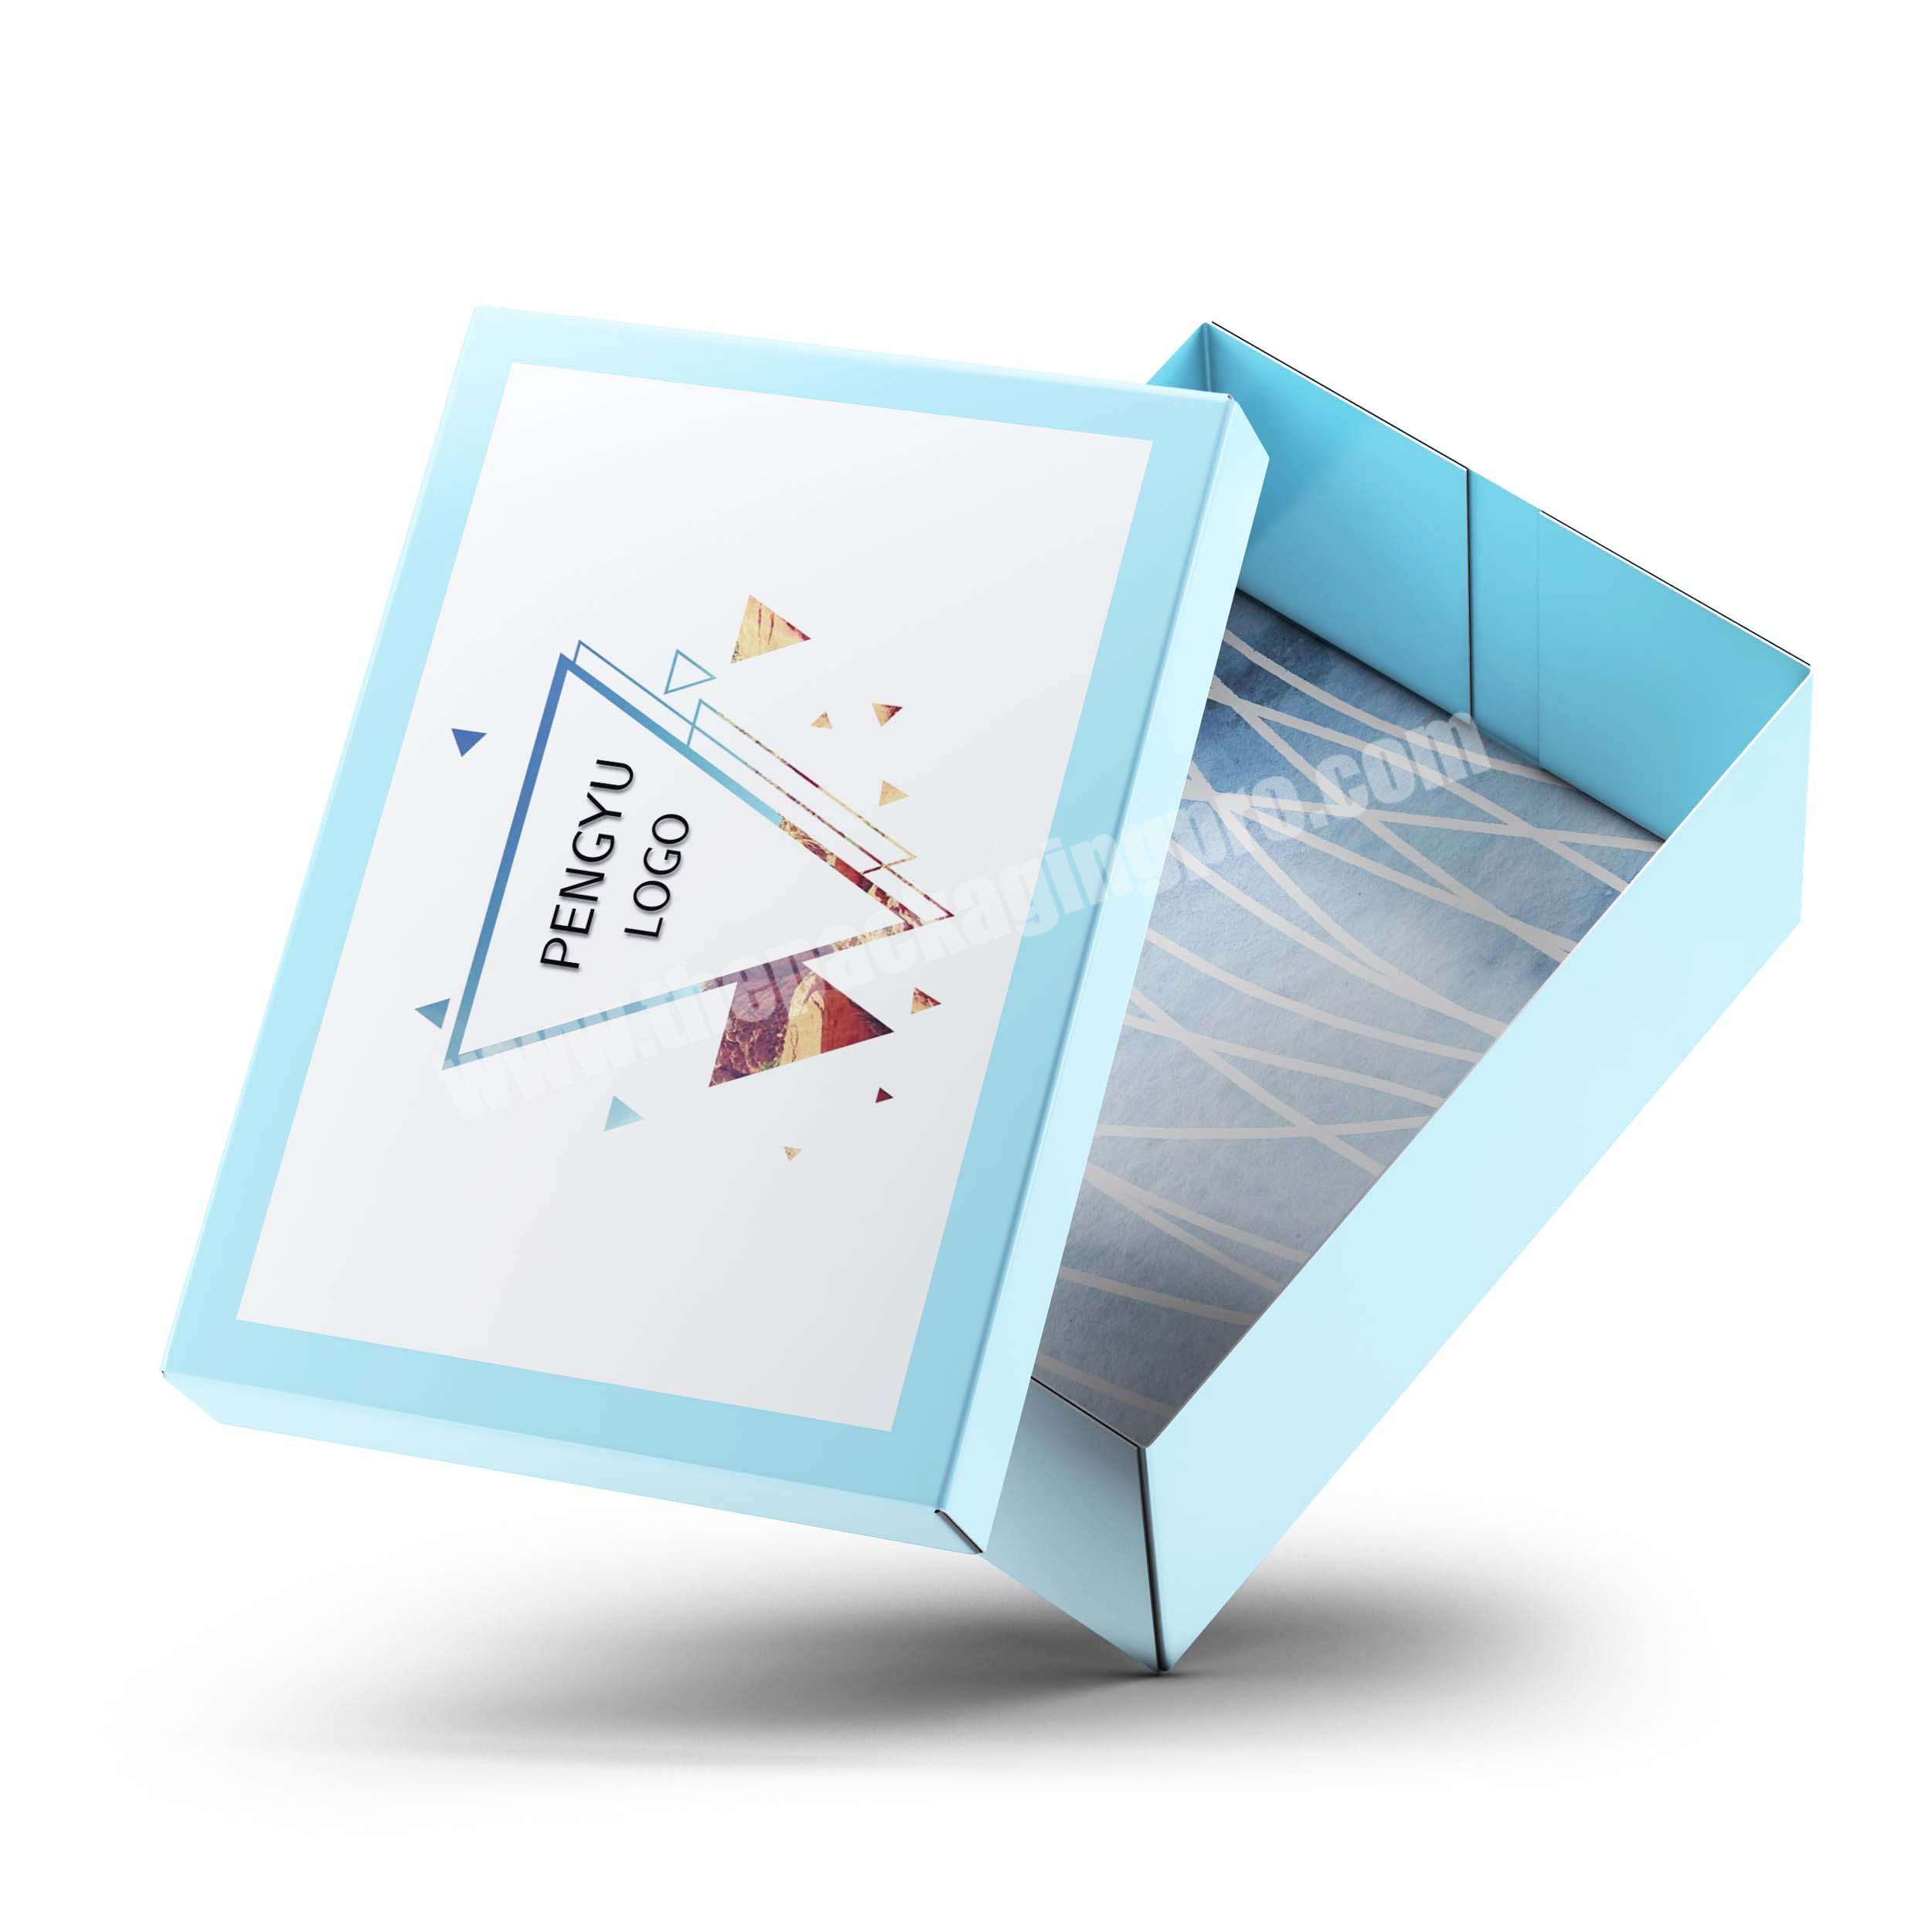 Large karton folding shoe box foldable rectanglg carton package box